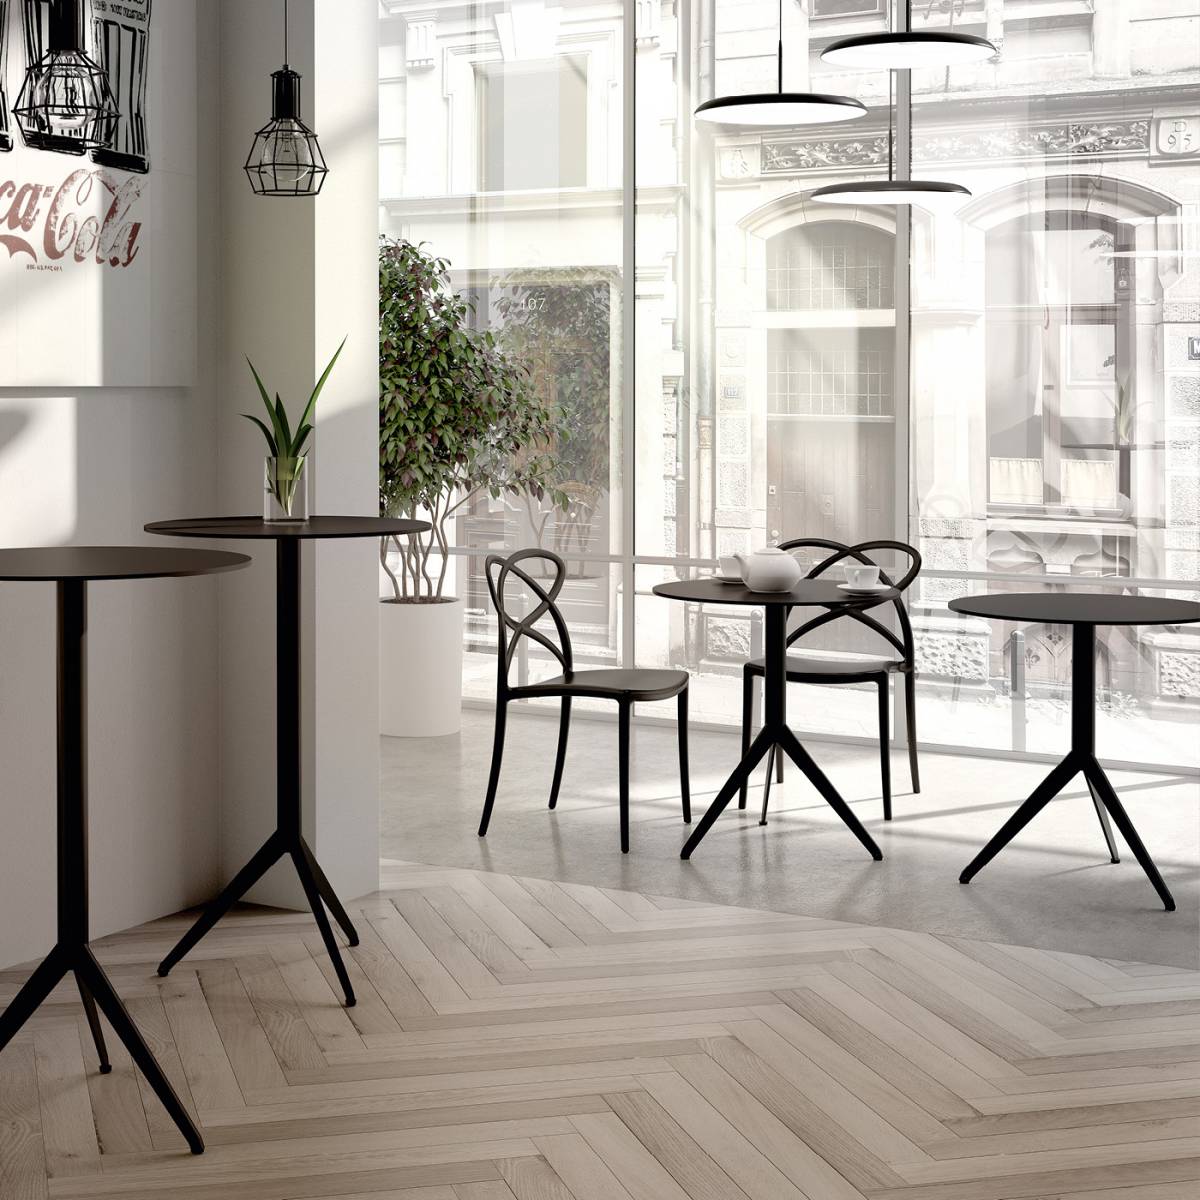 Pied de table personnalisable pour café et hôtel- MobiKent Design